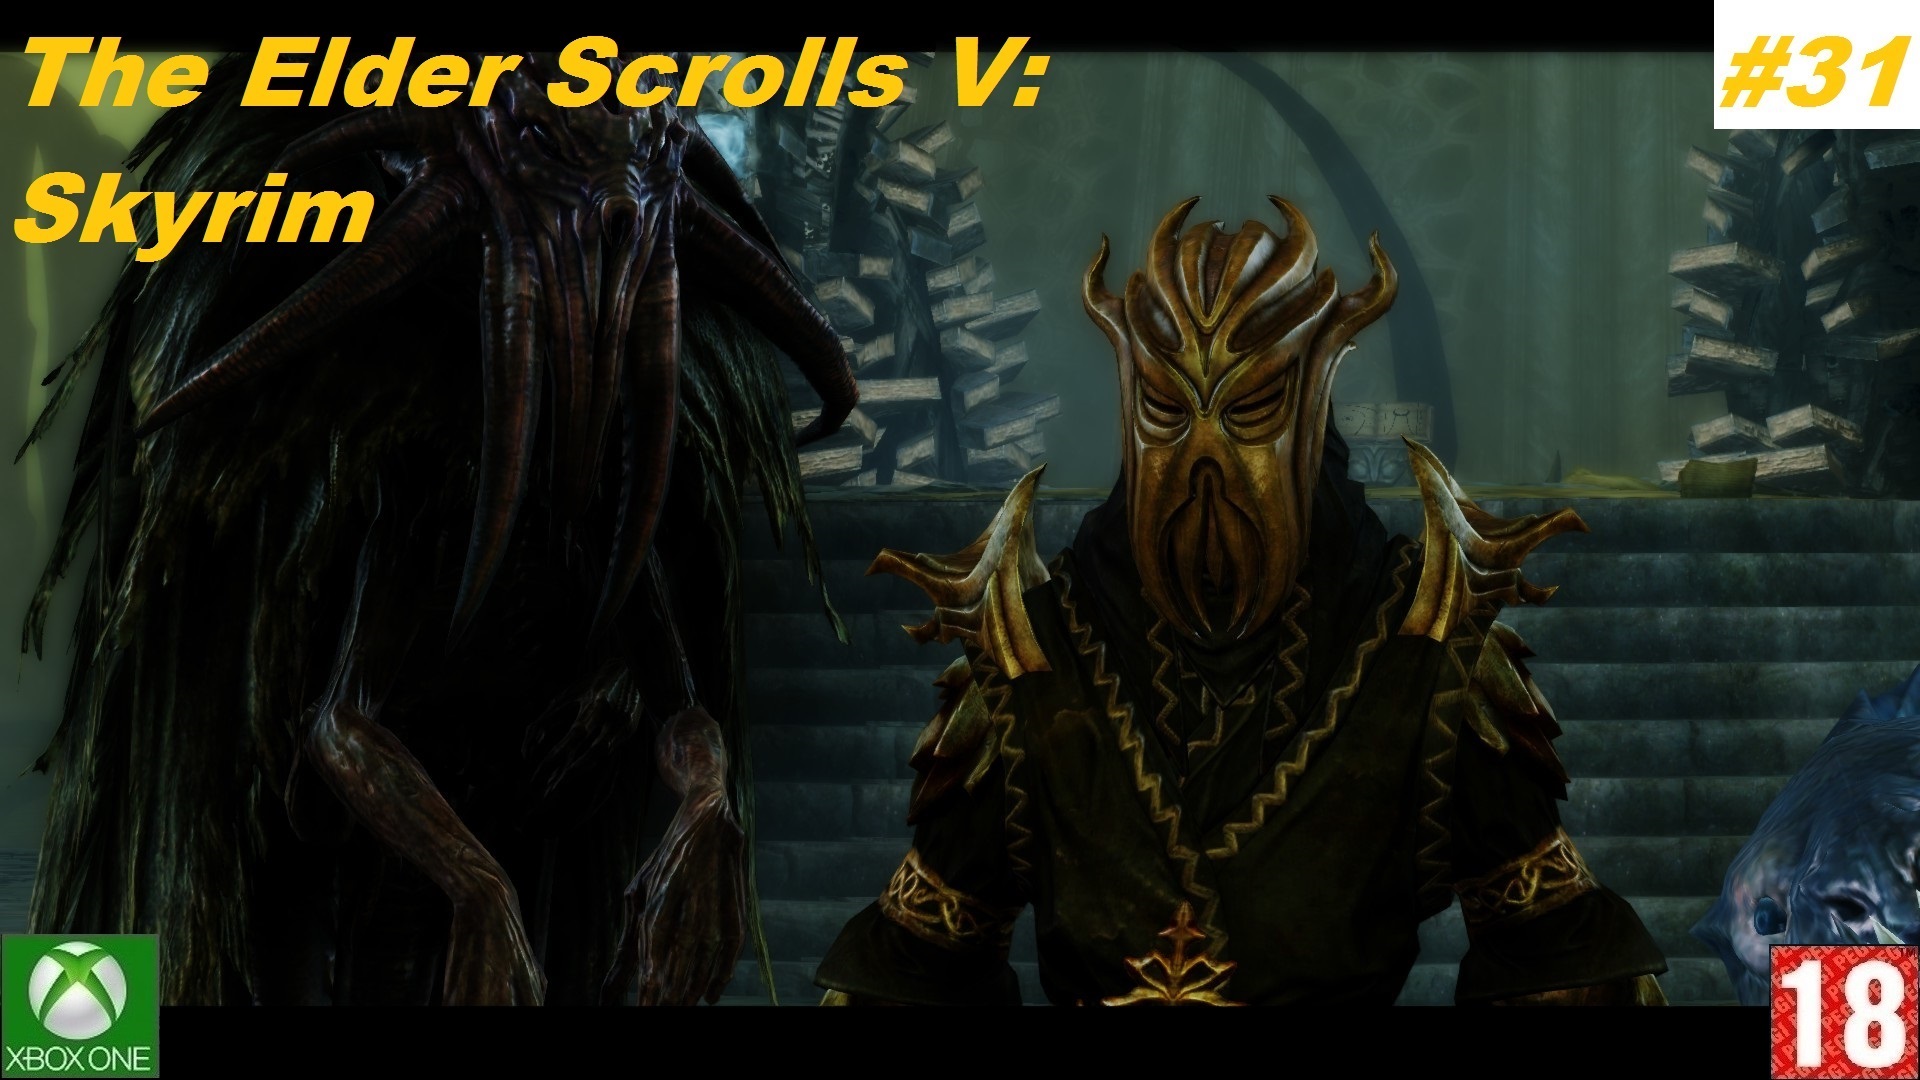 The Elder Scrolls V: Skyrim (Xbox One) - Прохождение #31, Драконорождённый. (без комментариев)